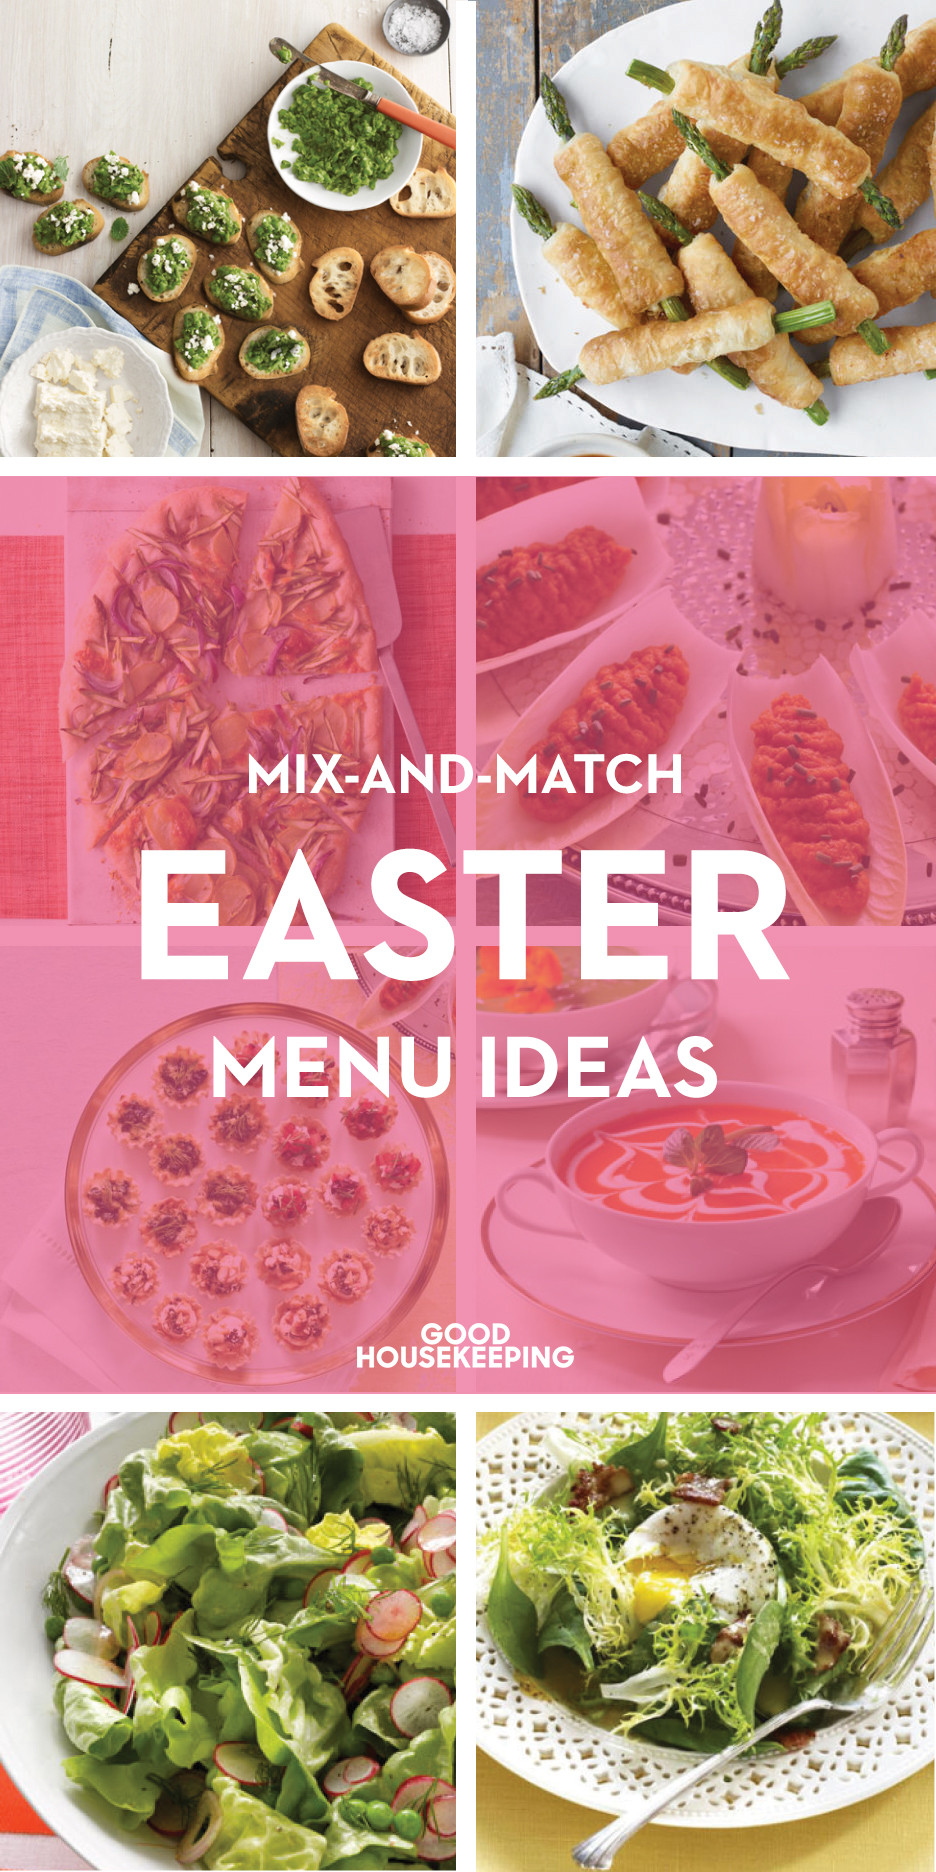 Easy Easter Menu Ideas
 65 Easter Dinner Menu Ideas Easy Recipes for Easter Dinner